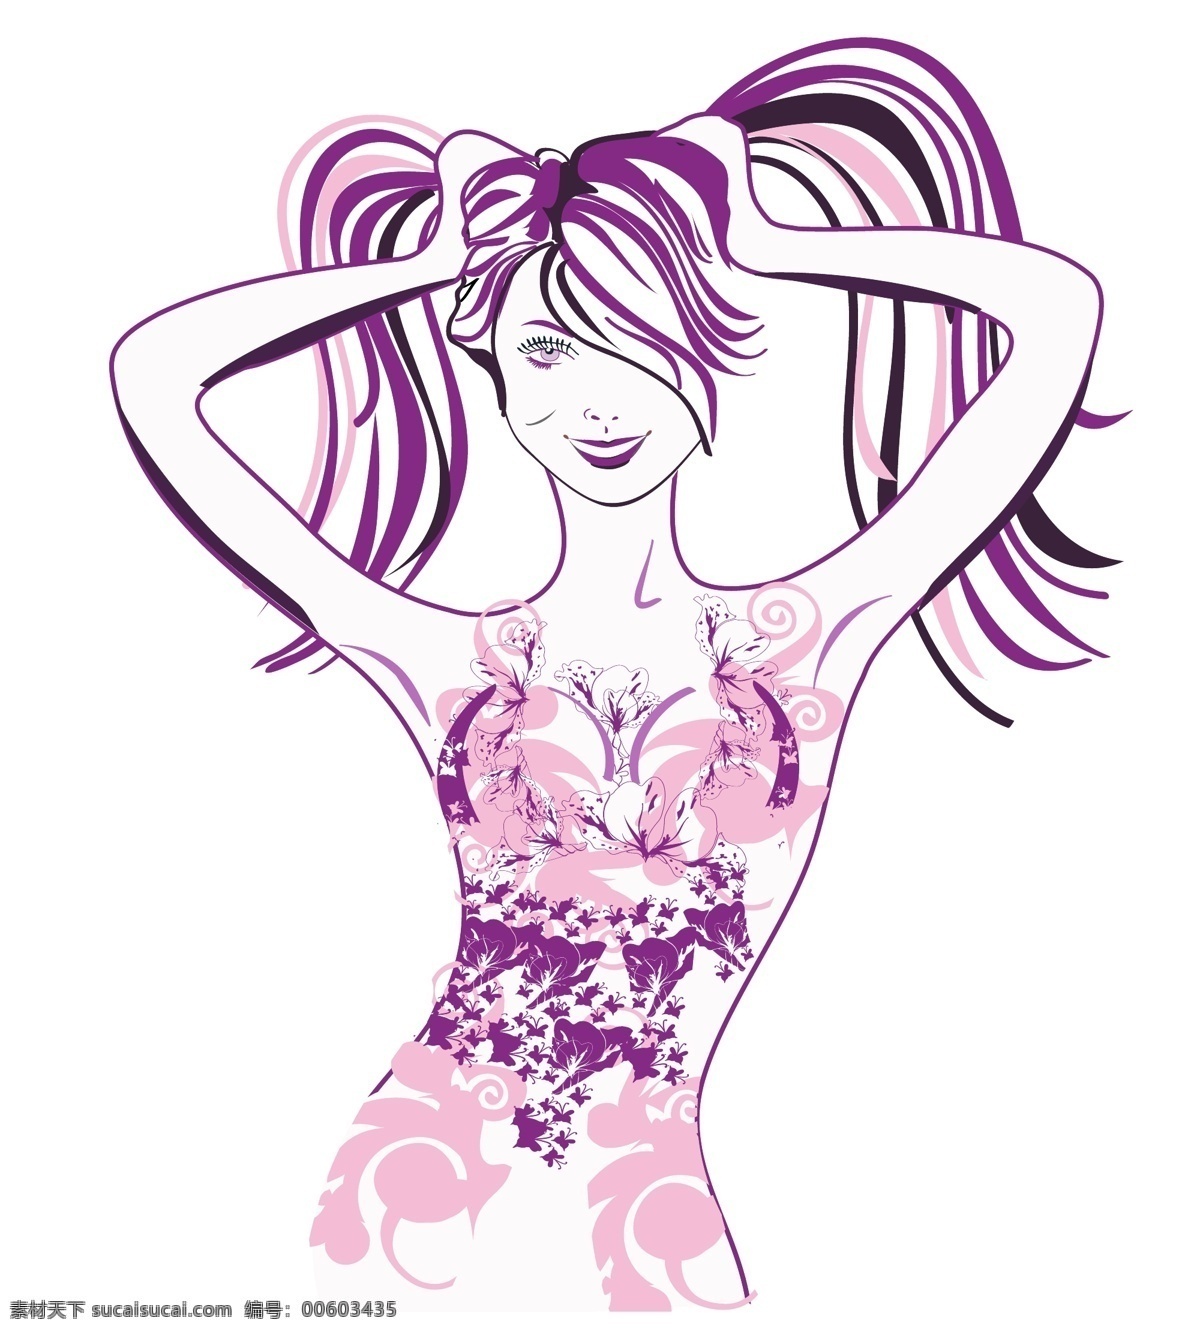 夜 女郎 时尚 女性 抽象 性感 紫色 长发 矢量 源文件